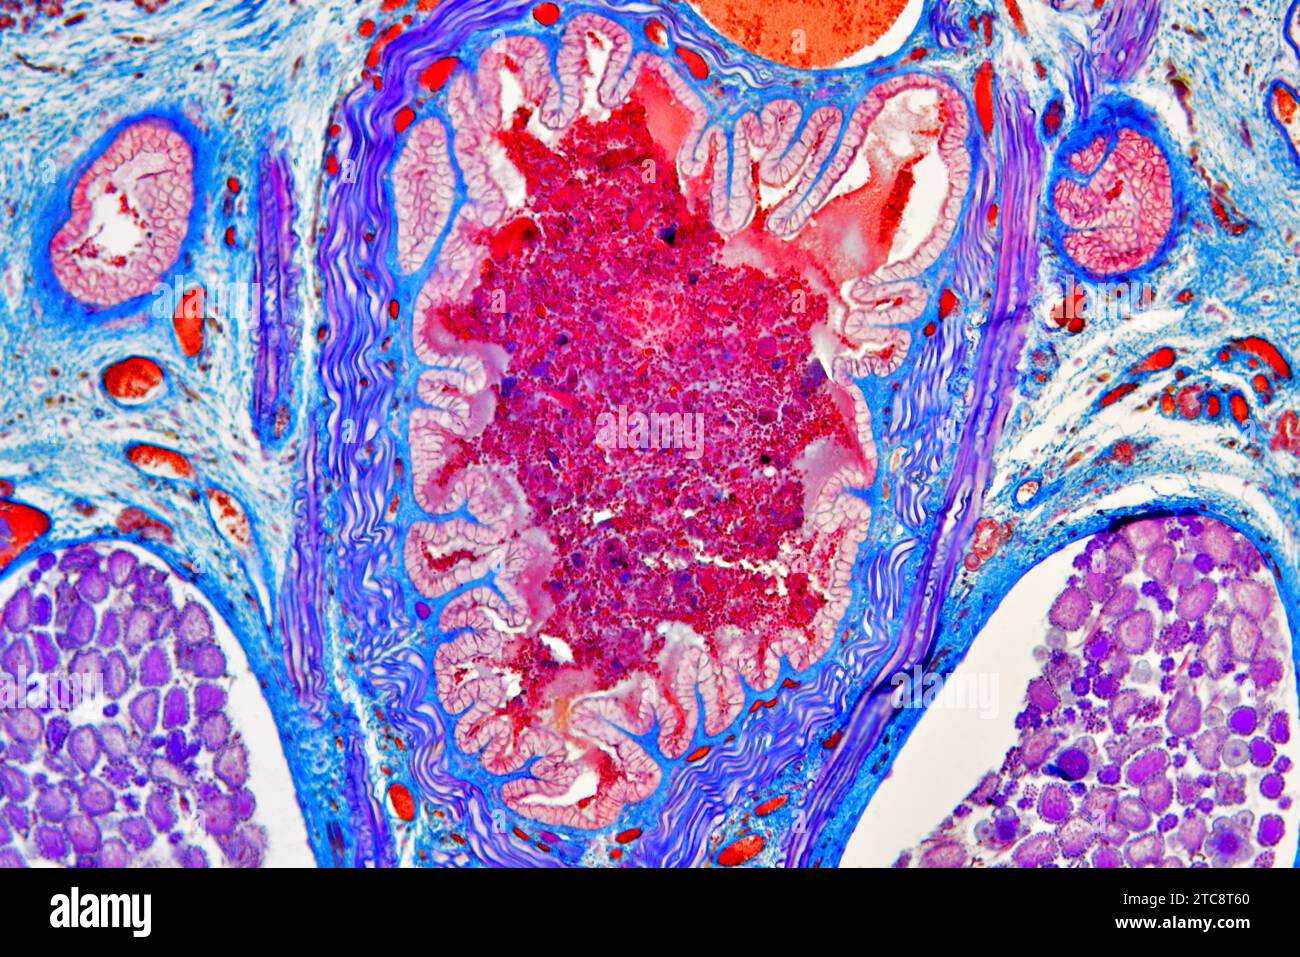 Sezione trasversale del leech medicinale europeo (Hirudo medicinalis) che mostra diverticolo dell'utero, dell'intestino e delle colture. Microscopio leggero X150 con larghezza di 10 cm. Foto Stock